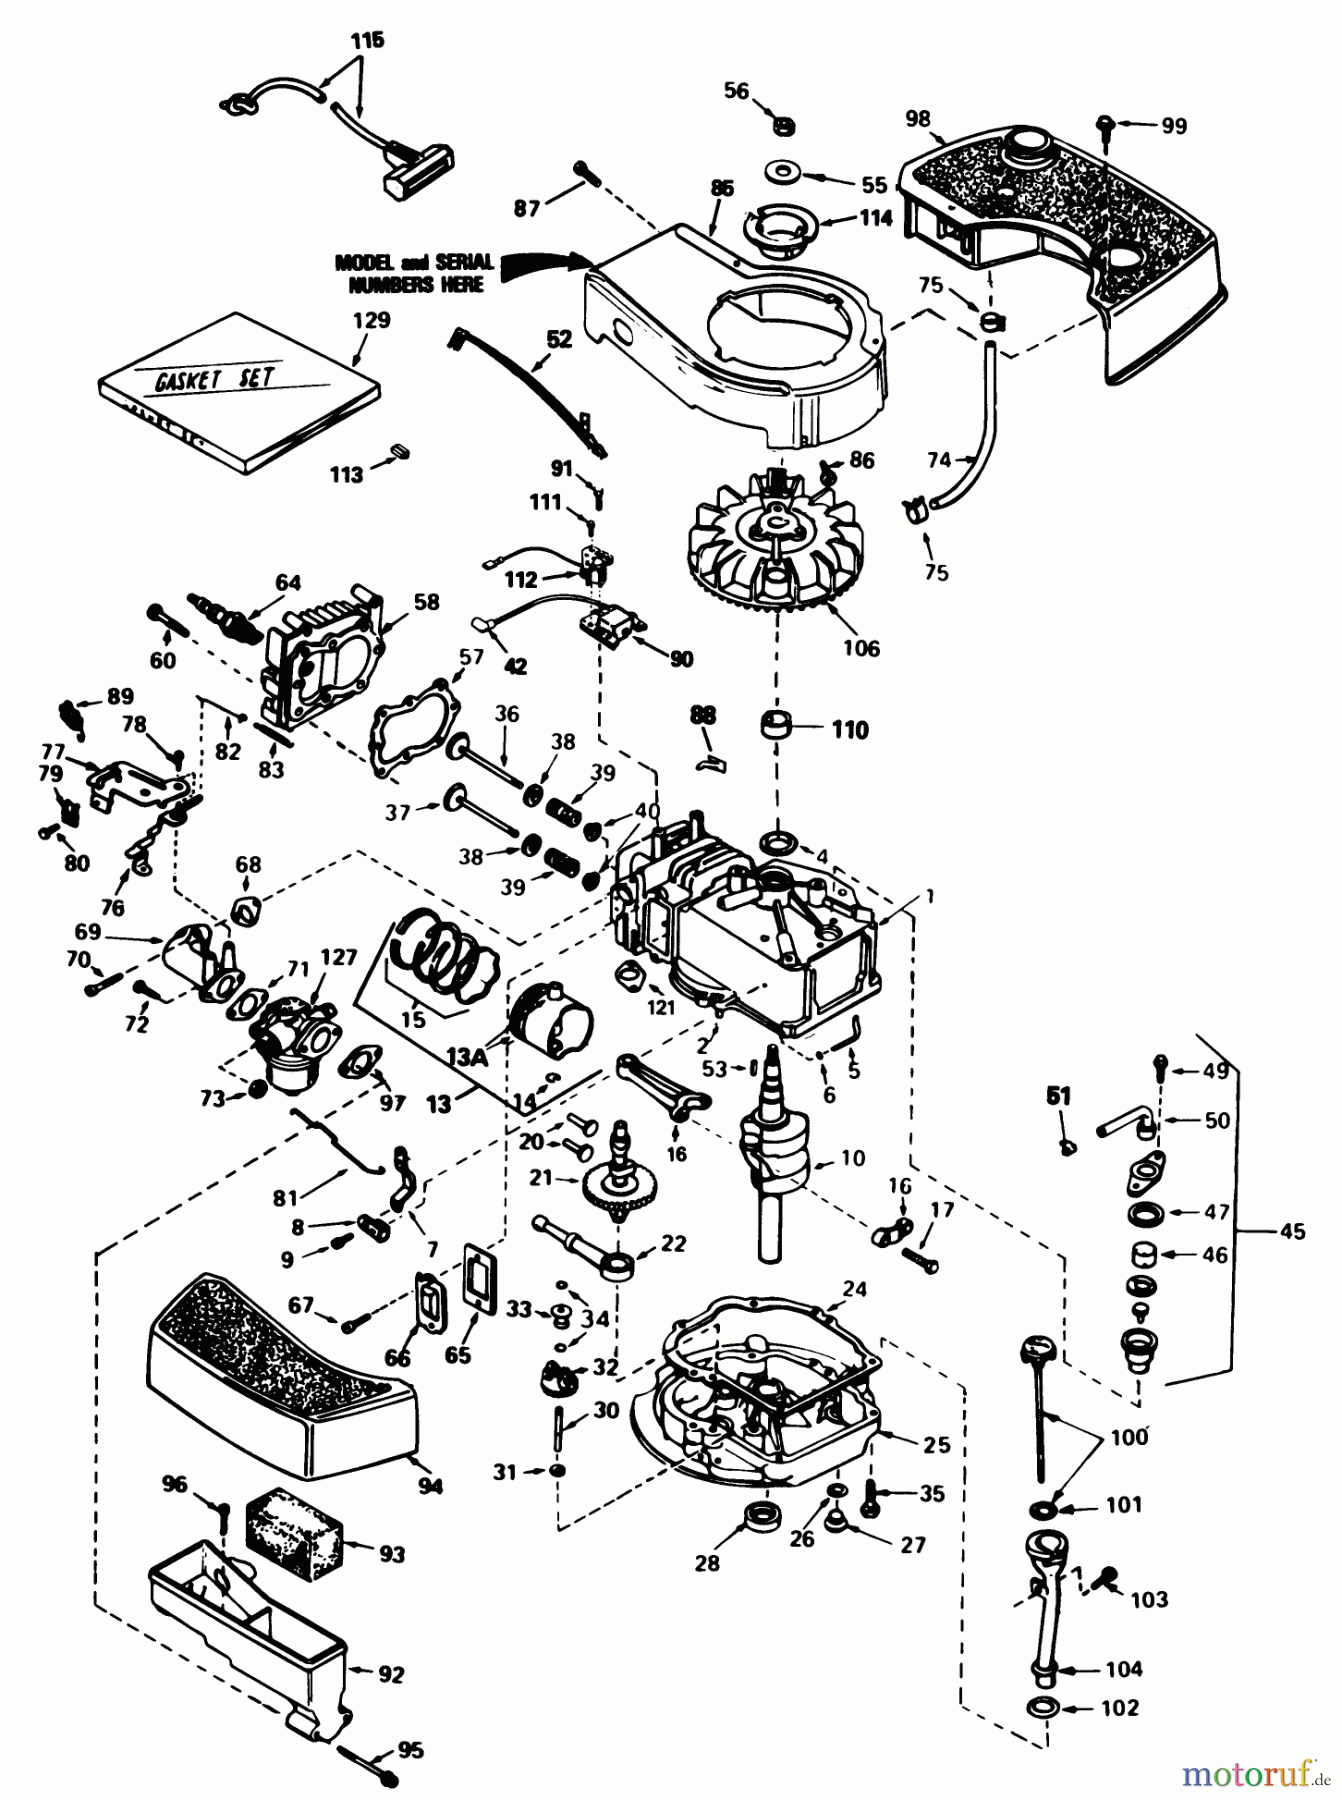  Toro Neu Mowers, Walk-Behind Seite 1 20718C - Toro Lawnmower, 1985 (5000001-5999999) ENGINE TECUMSEH MODEL NO. TNT 100-10096E